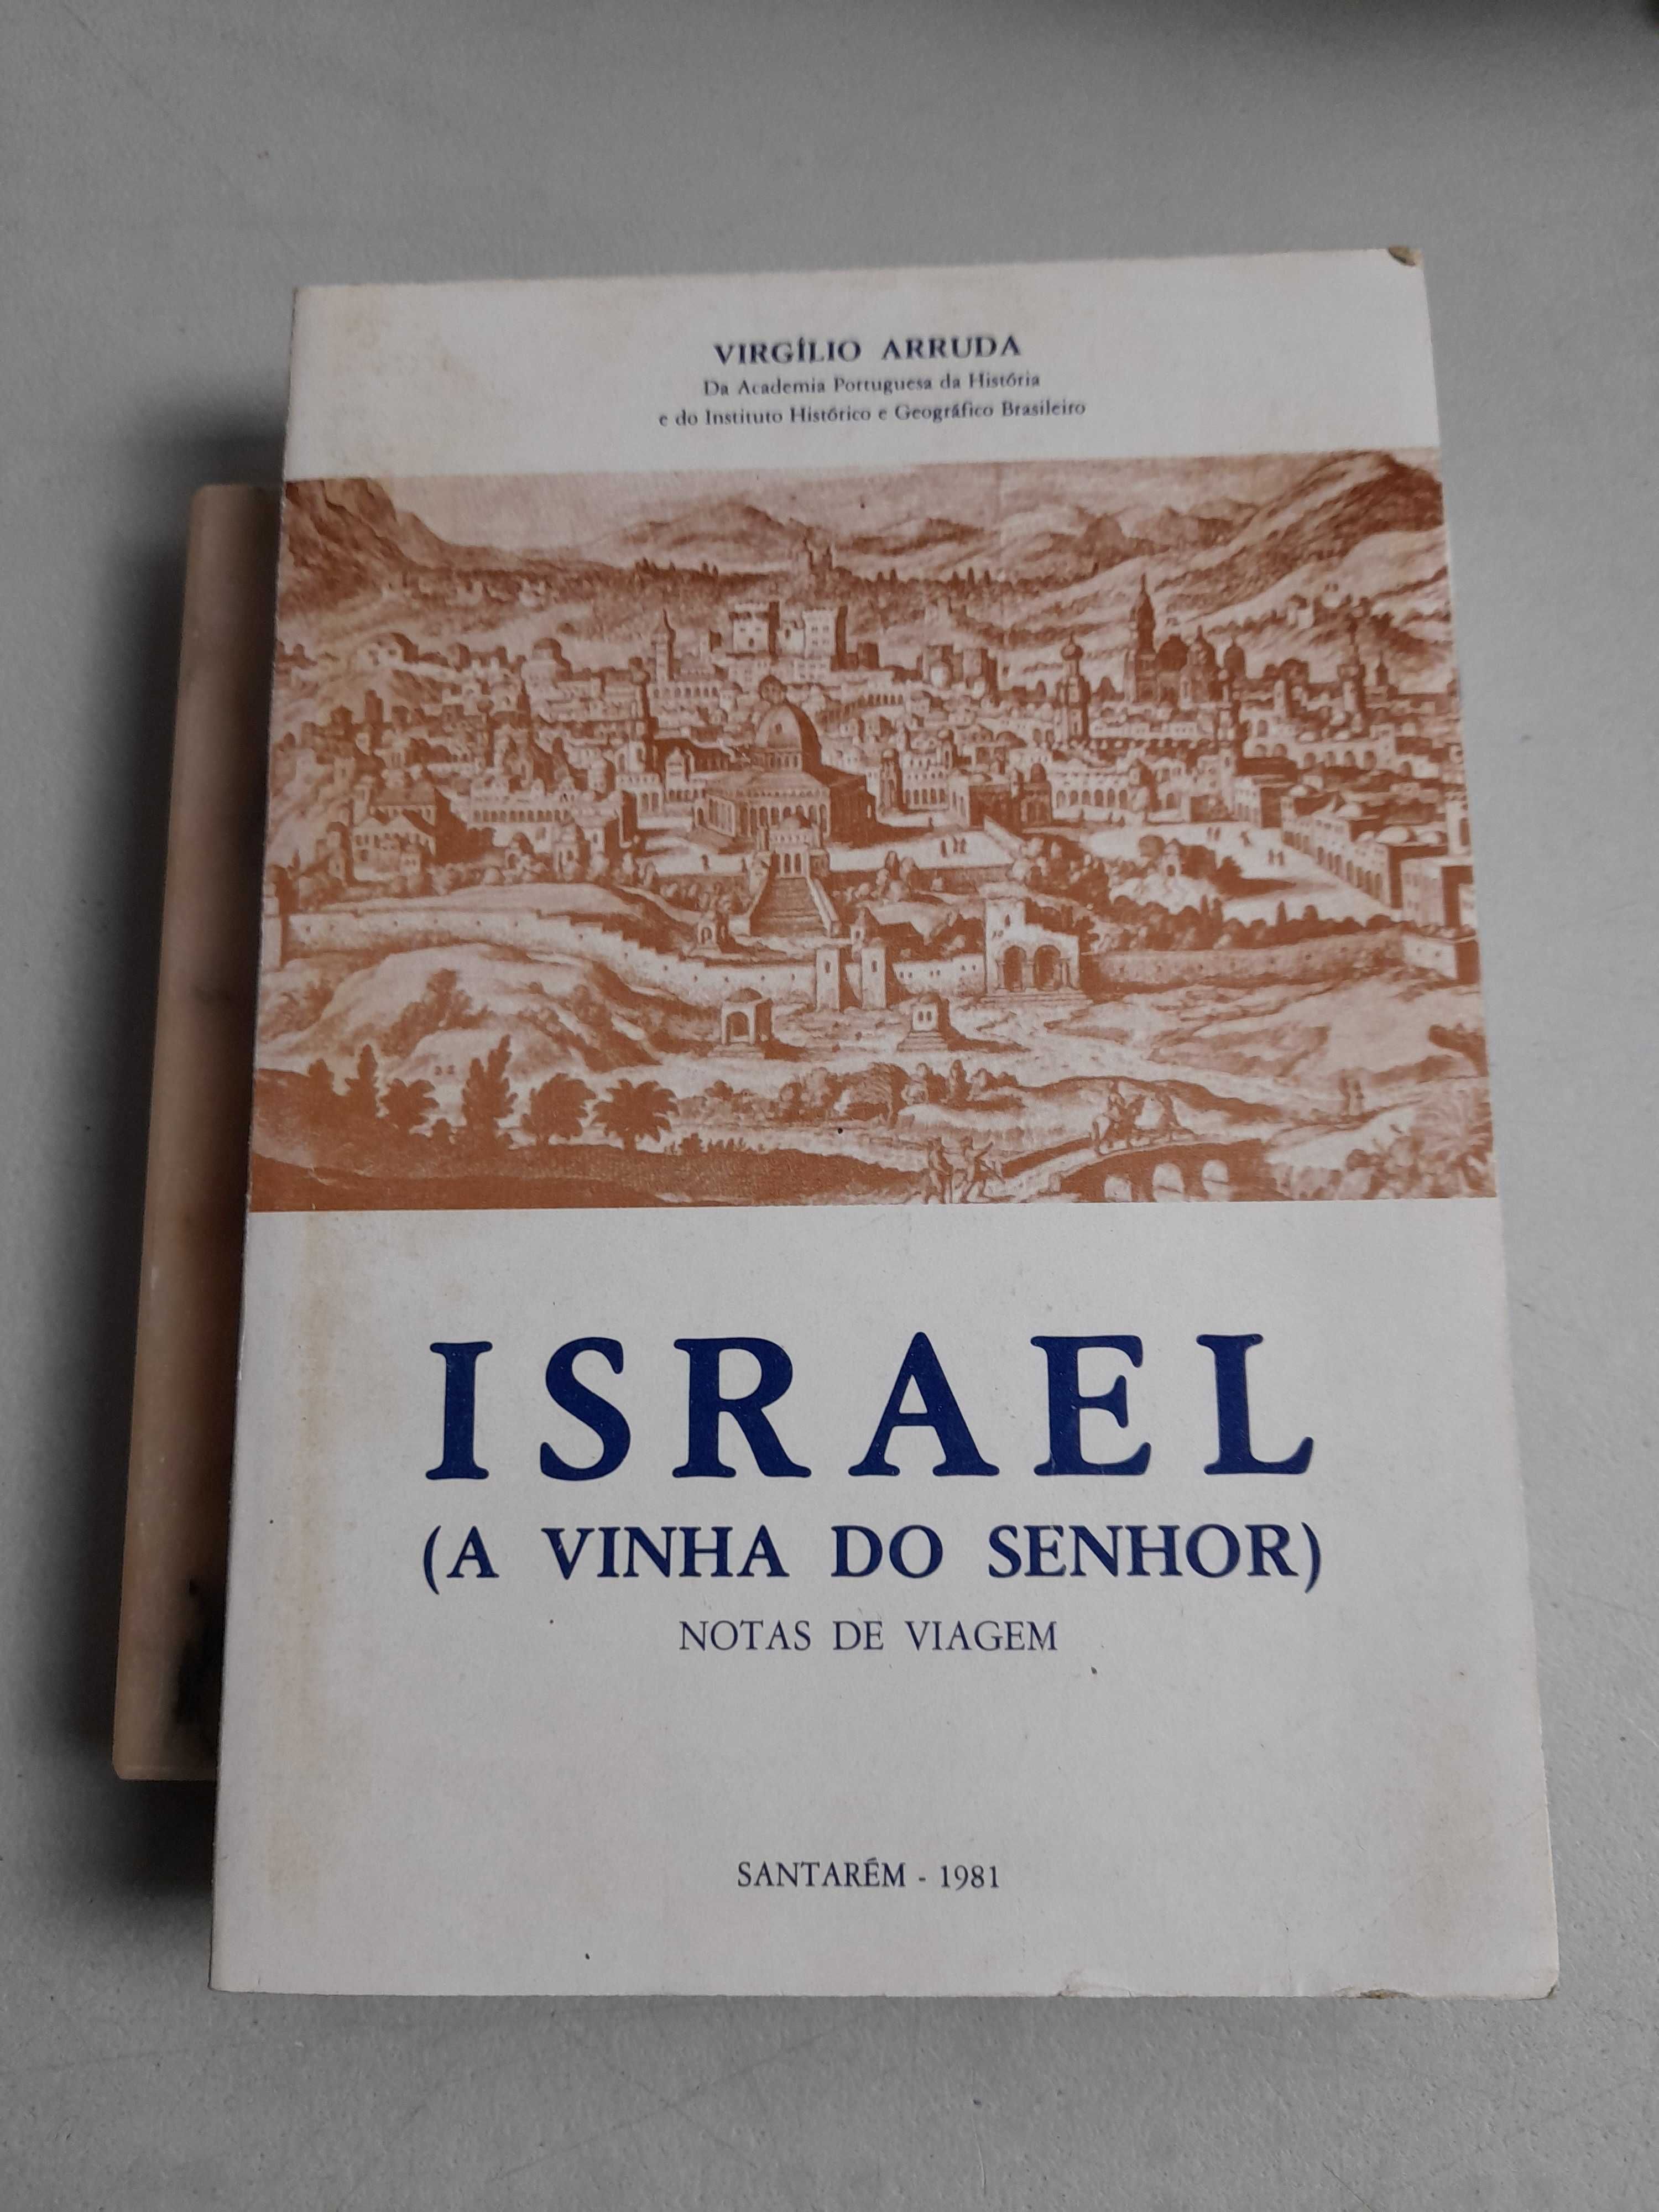 Livro PAR1 - Virgílio Arruda - Israel (A Vinha Do Senhor)